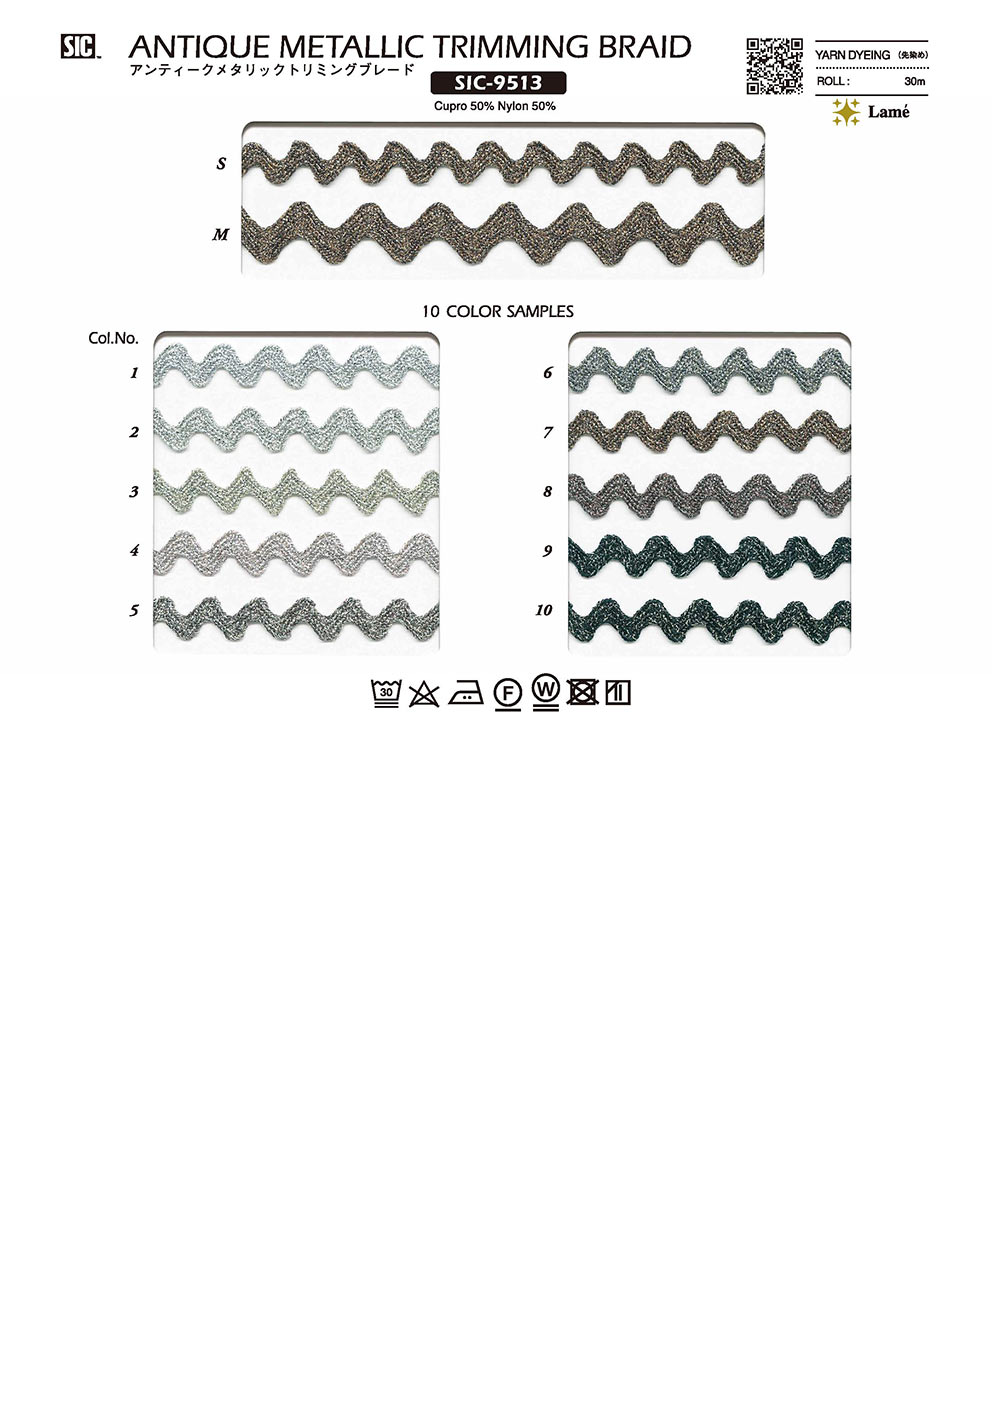 SIC-9513 골동품 메탈릭 트림 블레이드[리본 테이프 코드] SHINDO(SIC)